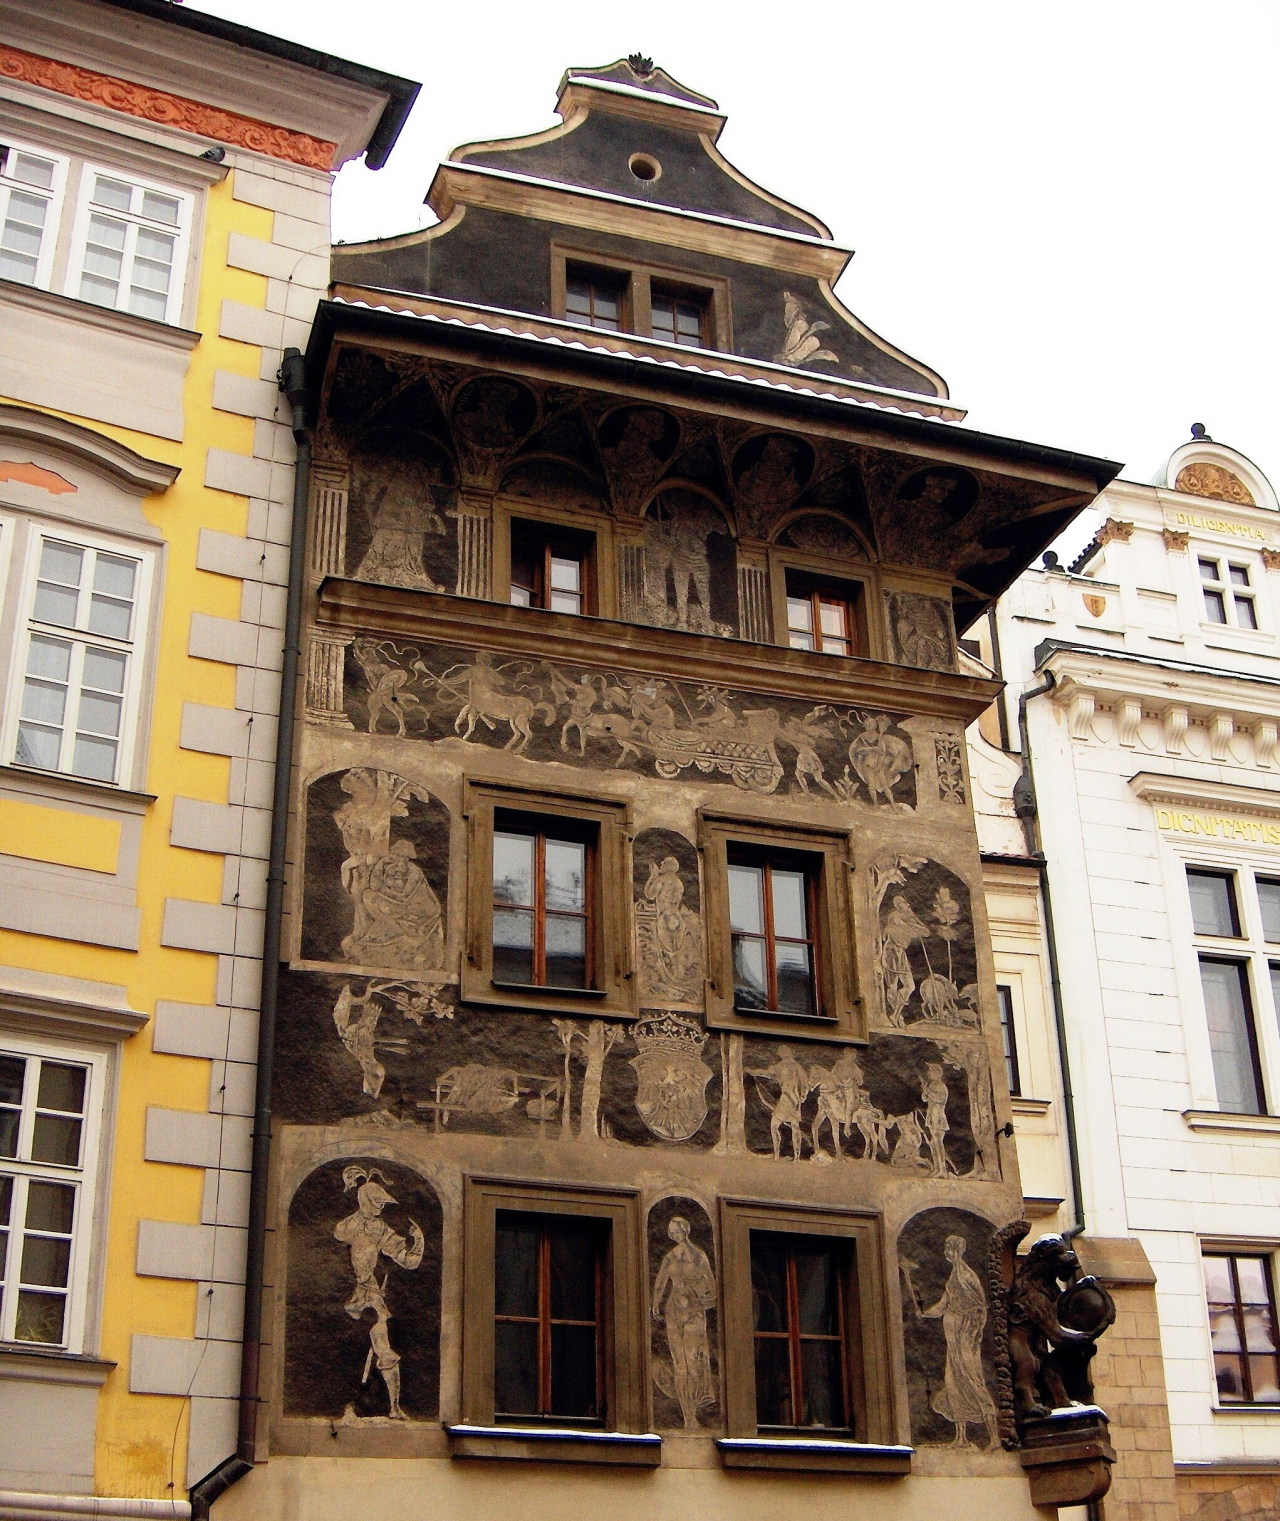 kafkaesque-world:  Franz Kafka’s Residence (1889-1896), Prague.  During Kafka’s